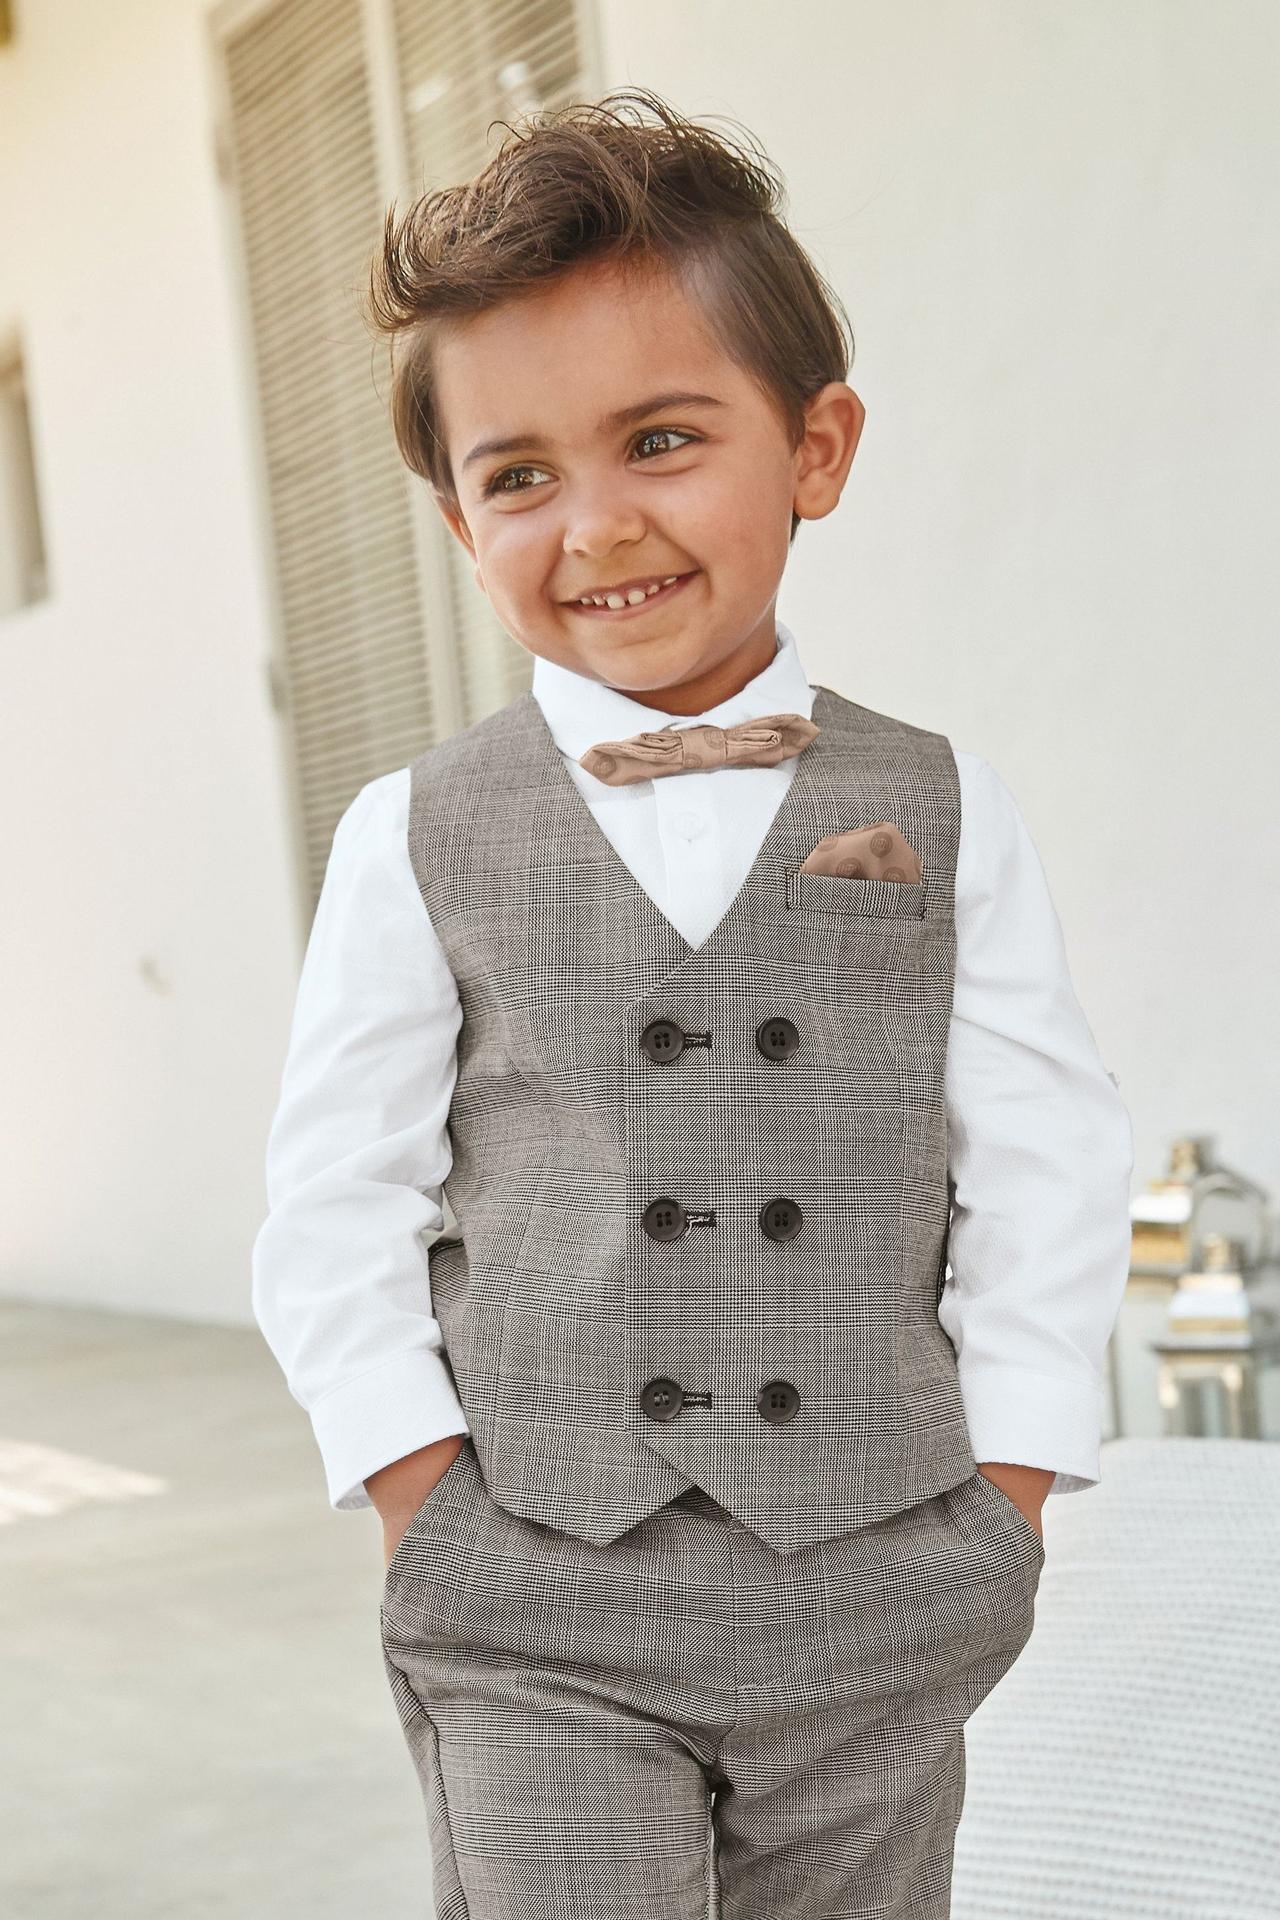 Pakistani Weddings | Wedding kids outfit, Kids fashion, Kids suits